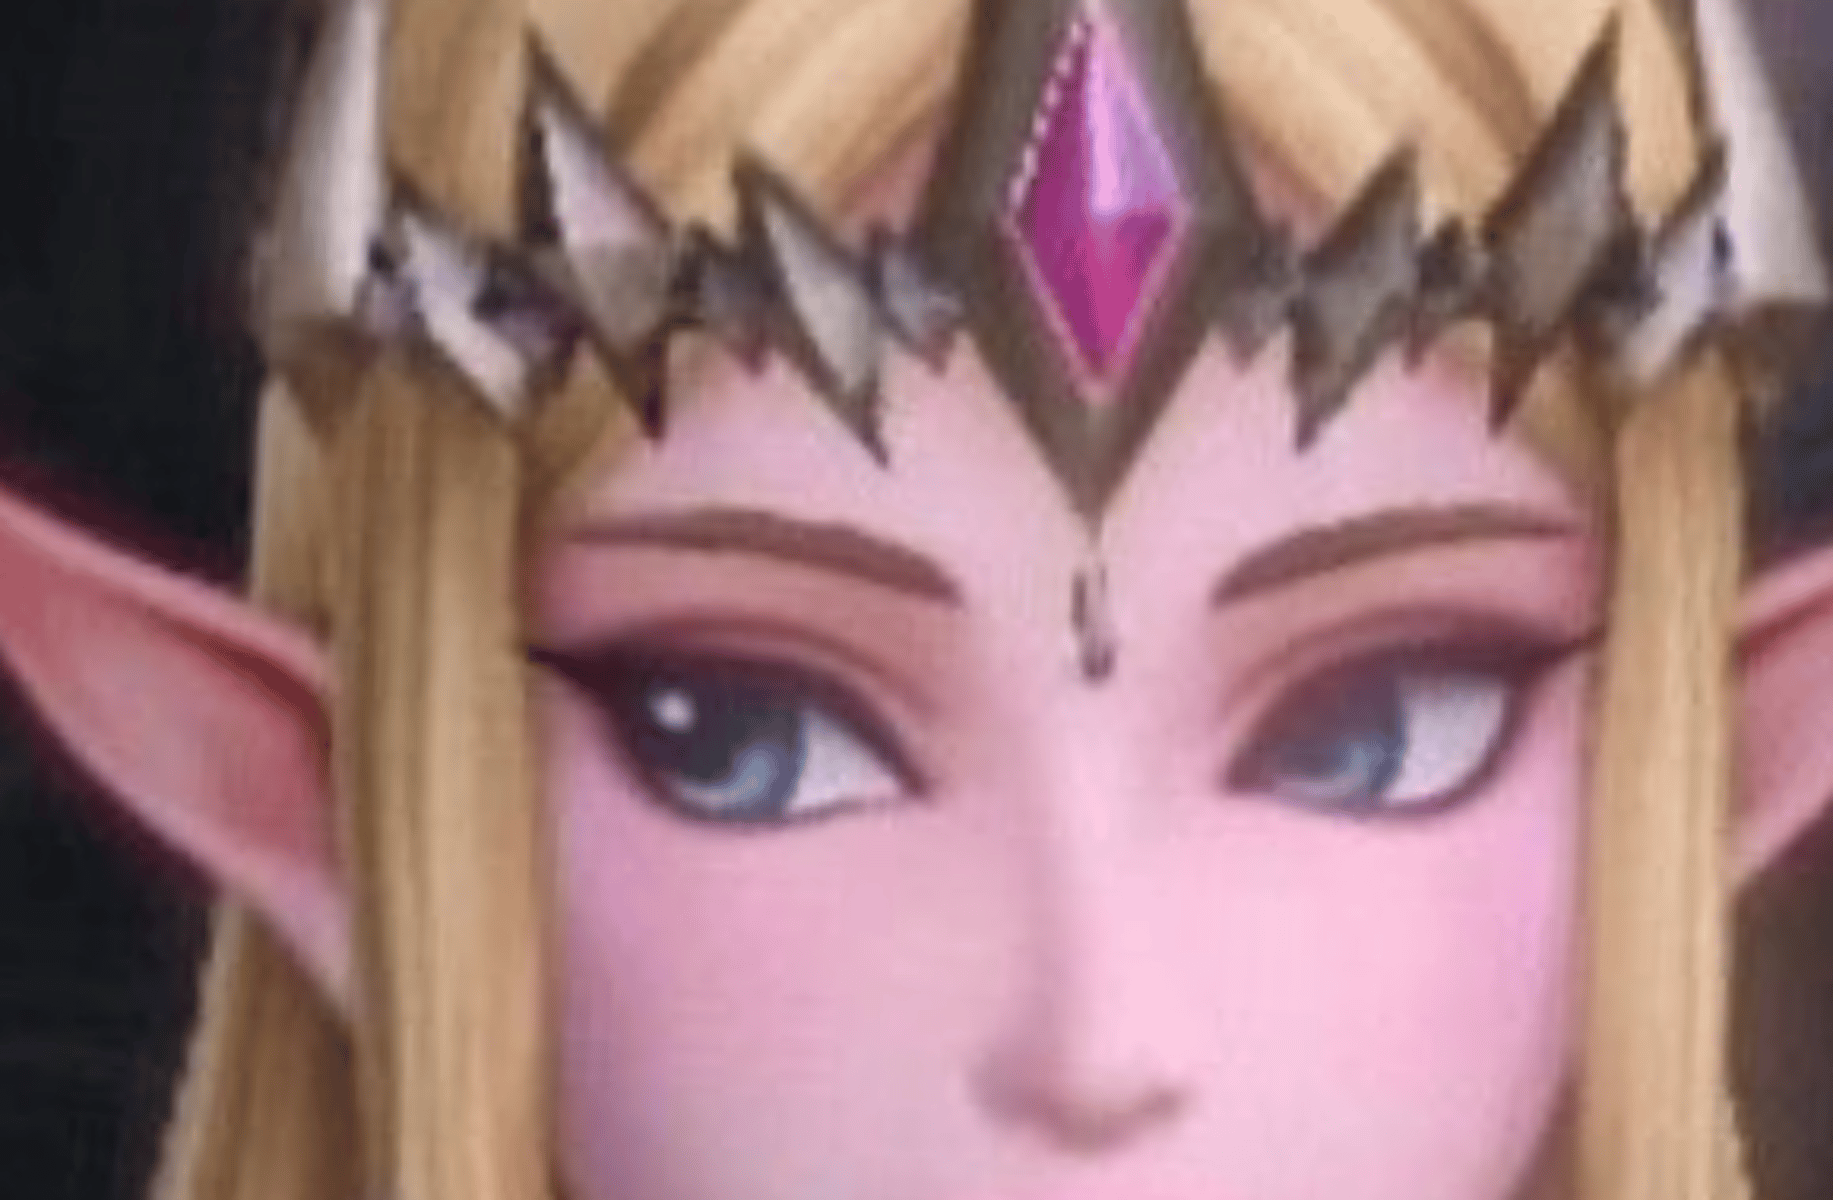 princess Zelda